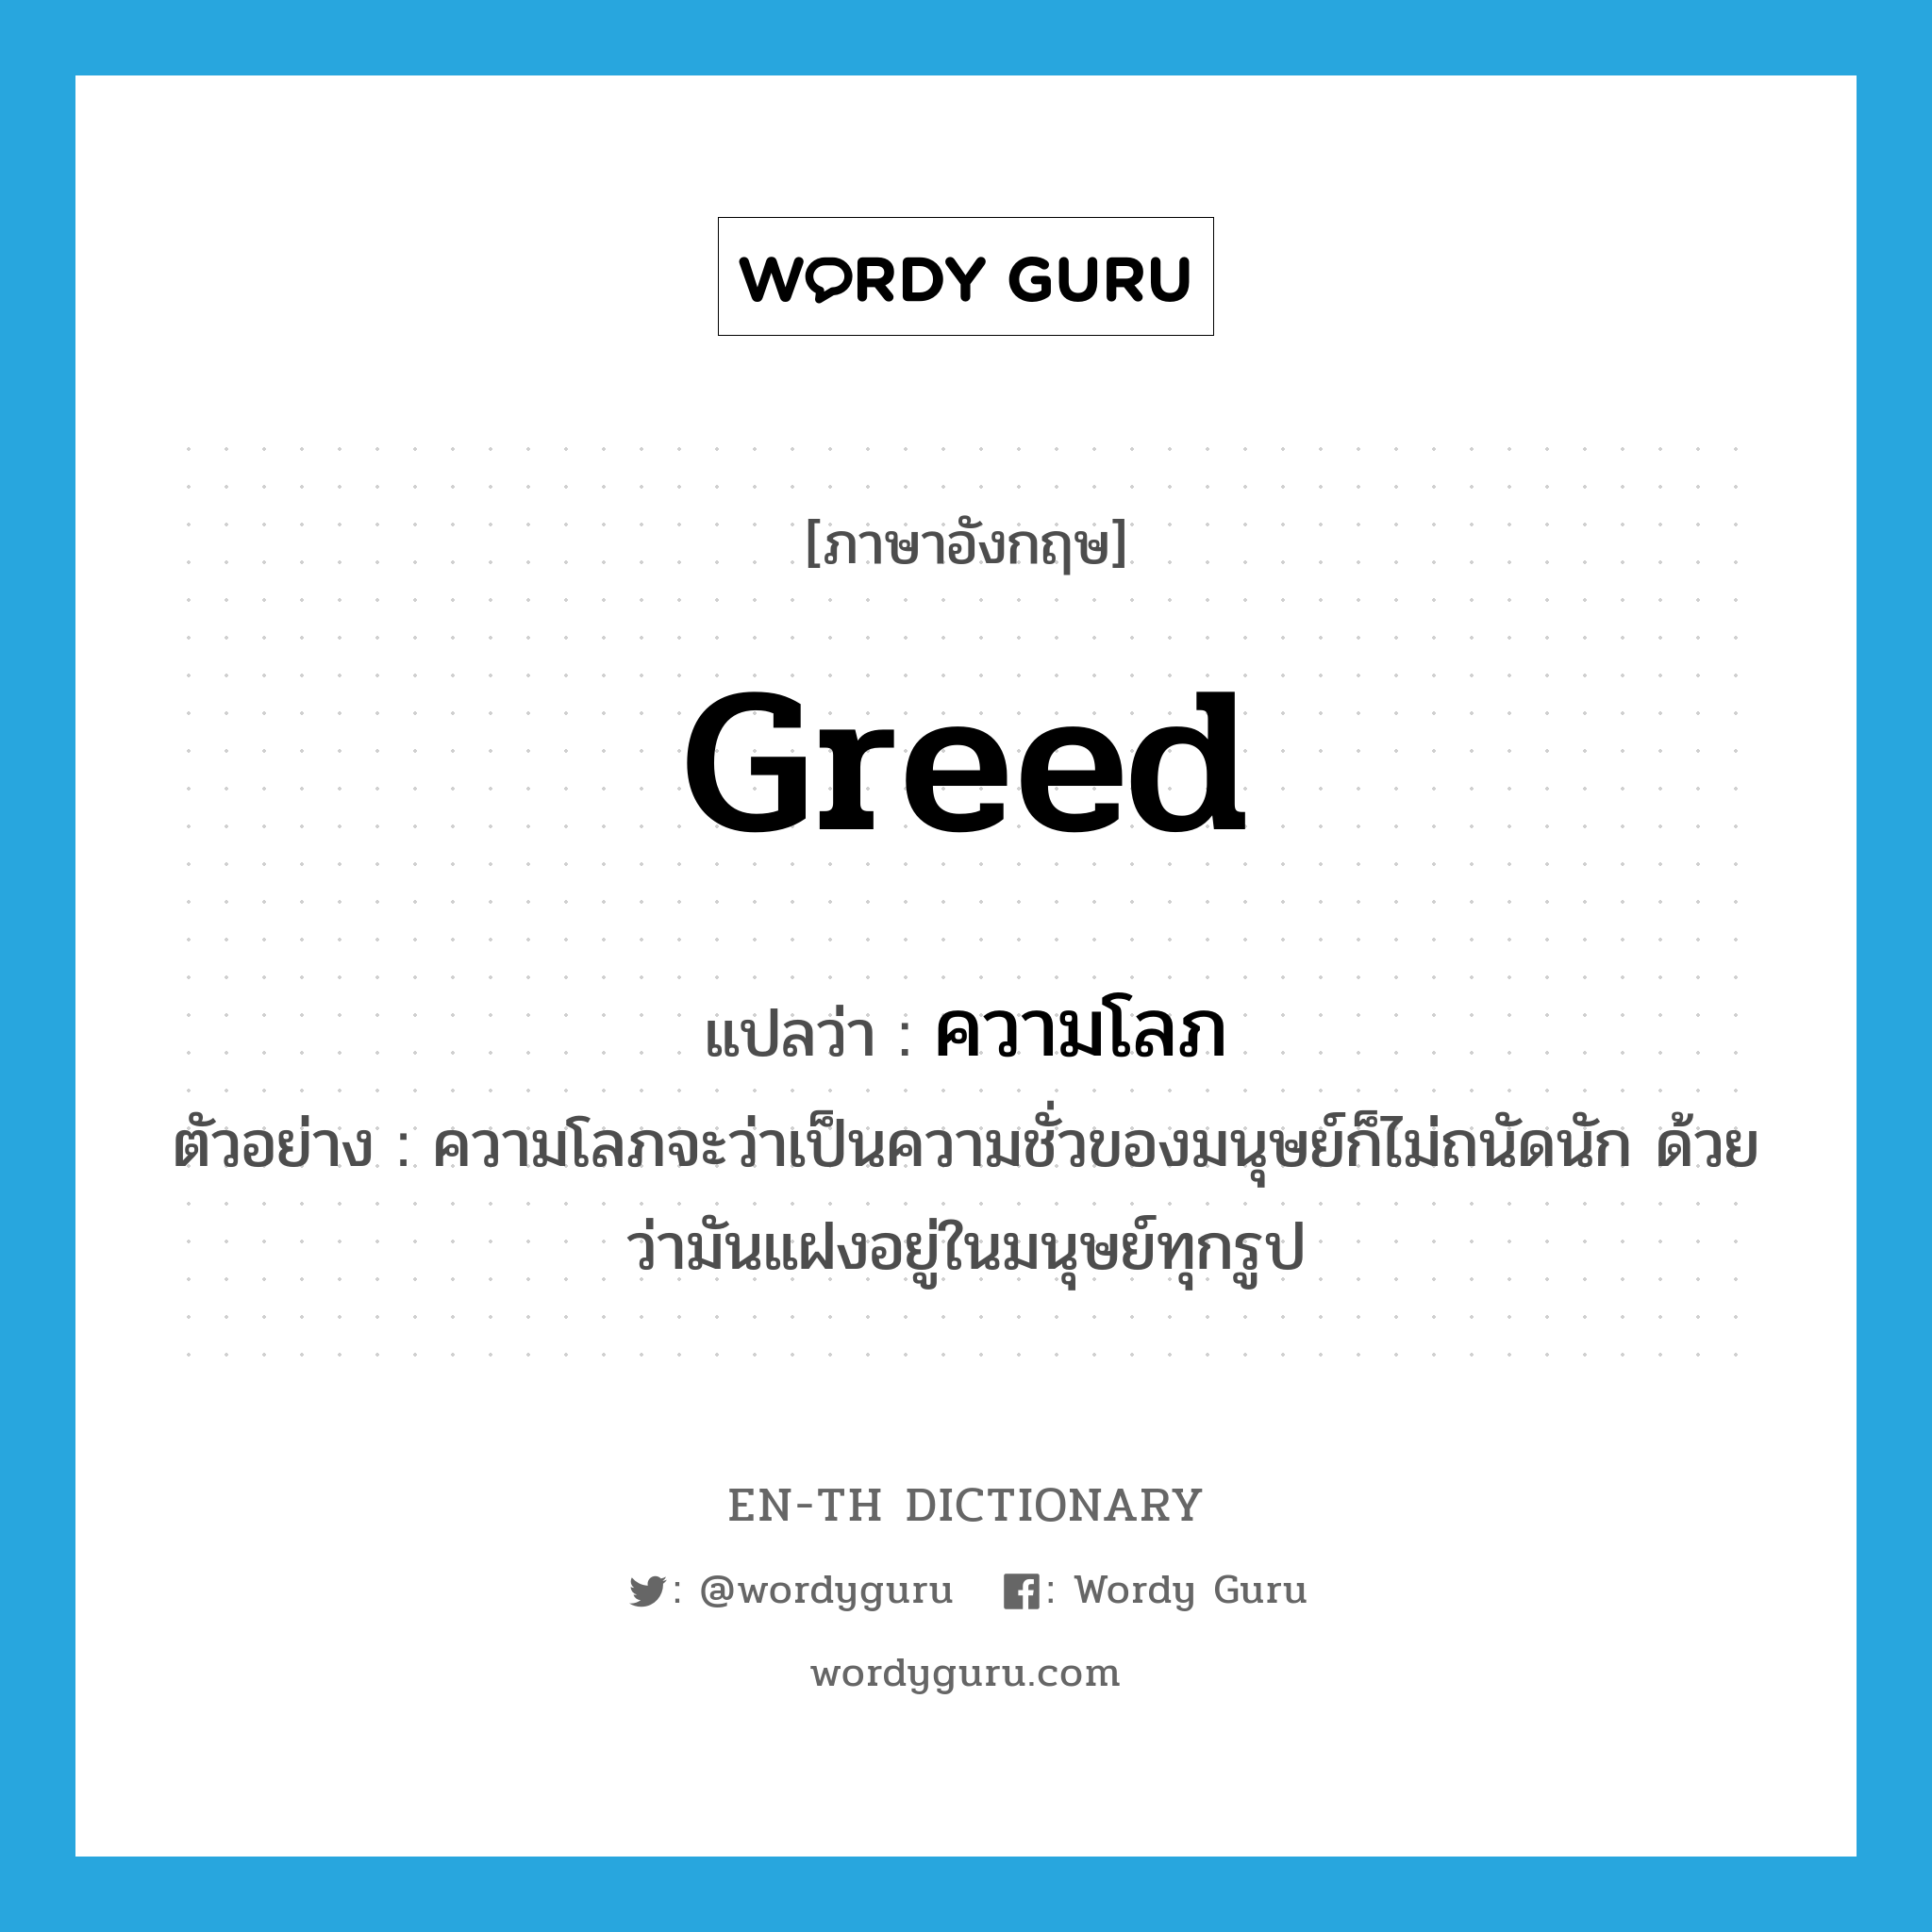 greed แปลว่า?, คำศัพท์ภาษาอังกฤษ greed แปลว่า ความโลภ ประเภท N ตัวอย่าง ความโลภจะว่าเป็นความชั่วของมนุษย์ก็ไม่ถนัดนัก ด้วยว่ามันแฝงอยู่ในมนุษย์ทุกรูป หมวด N